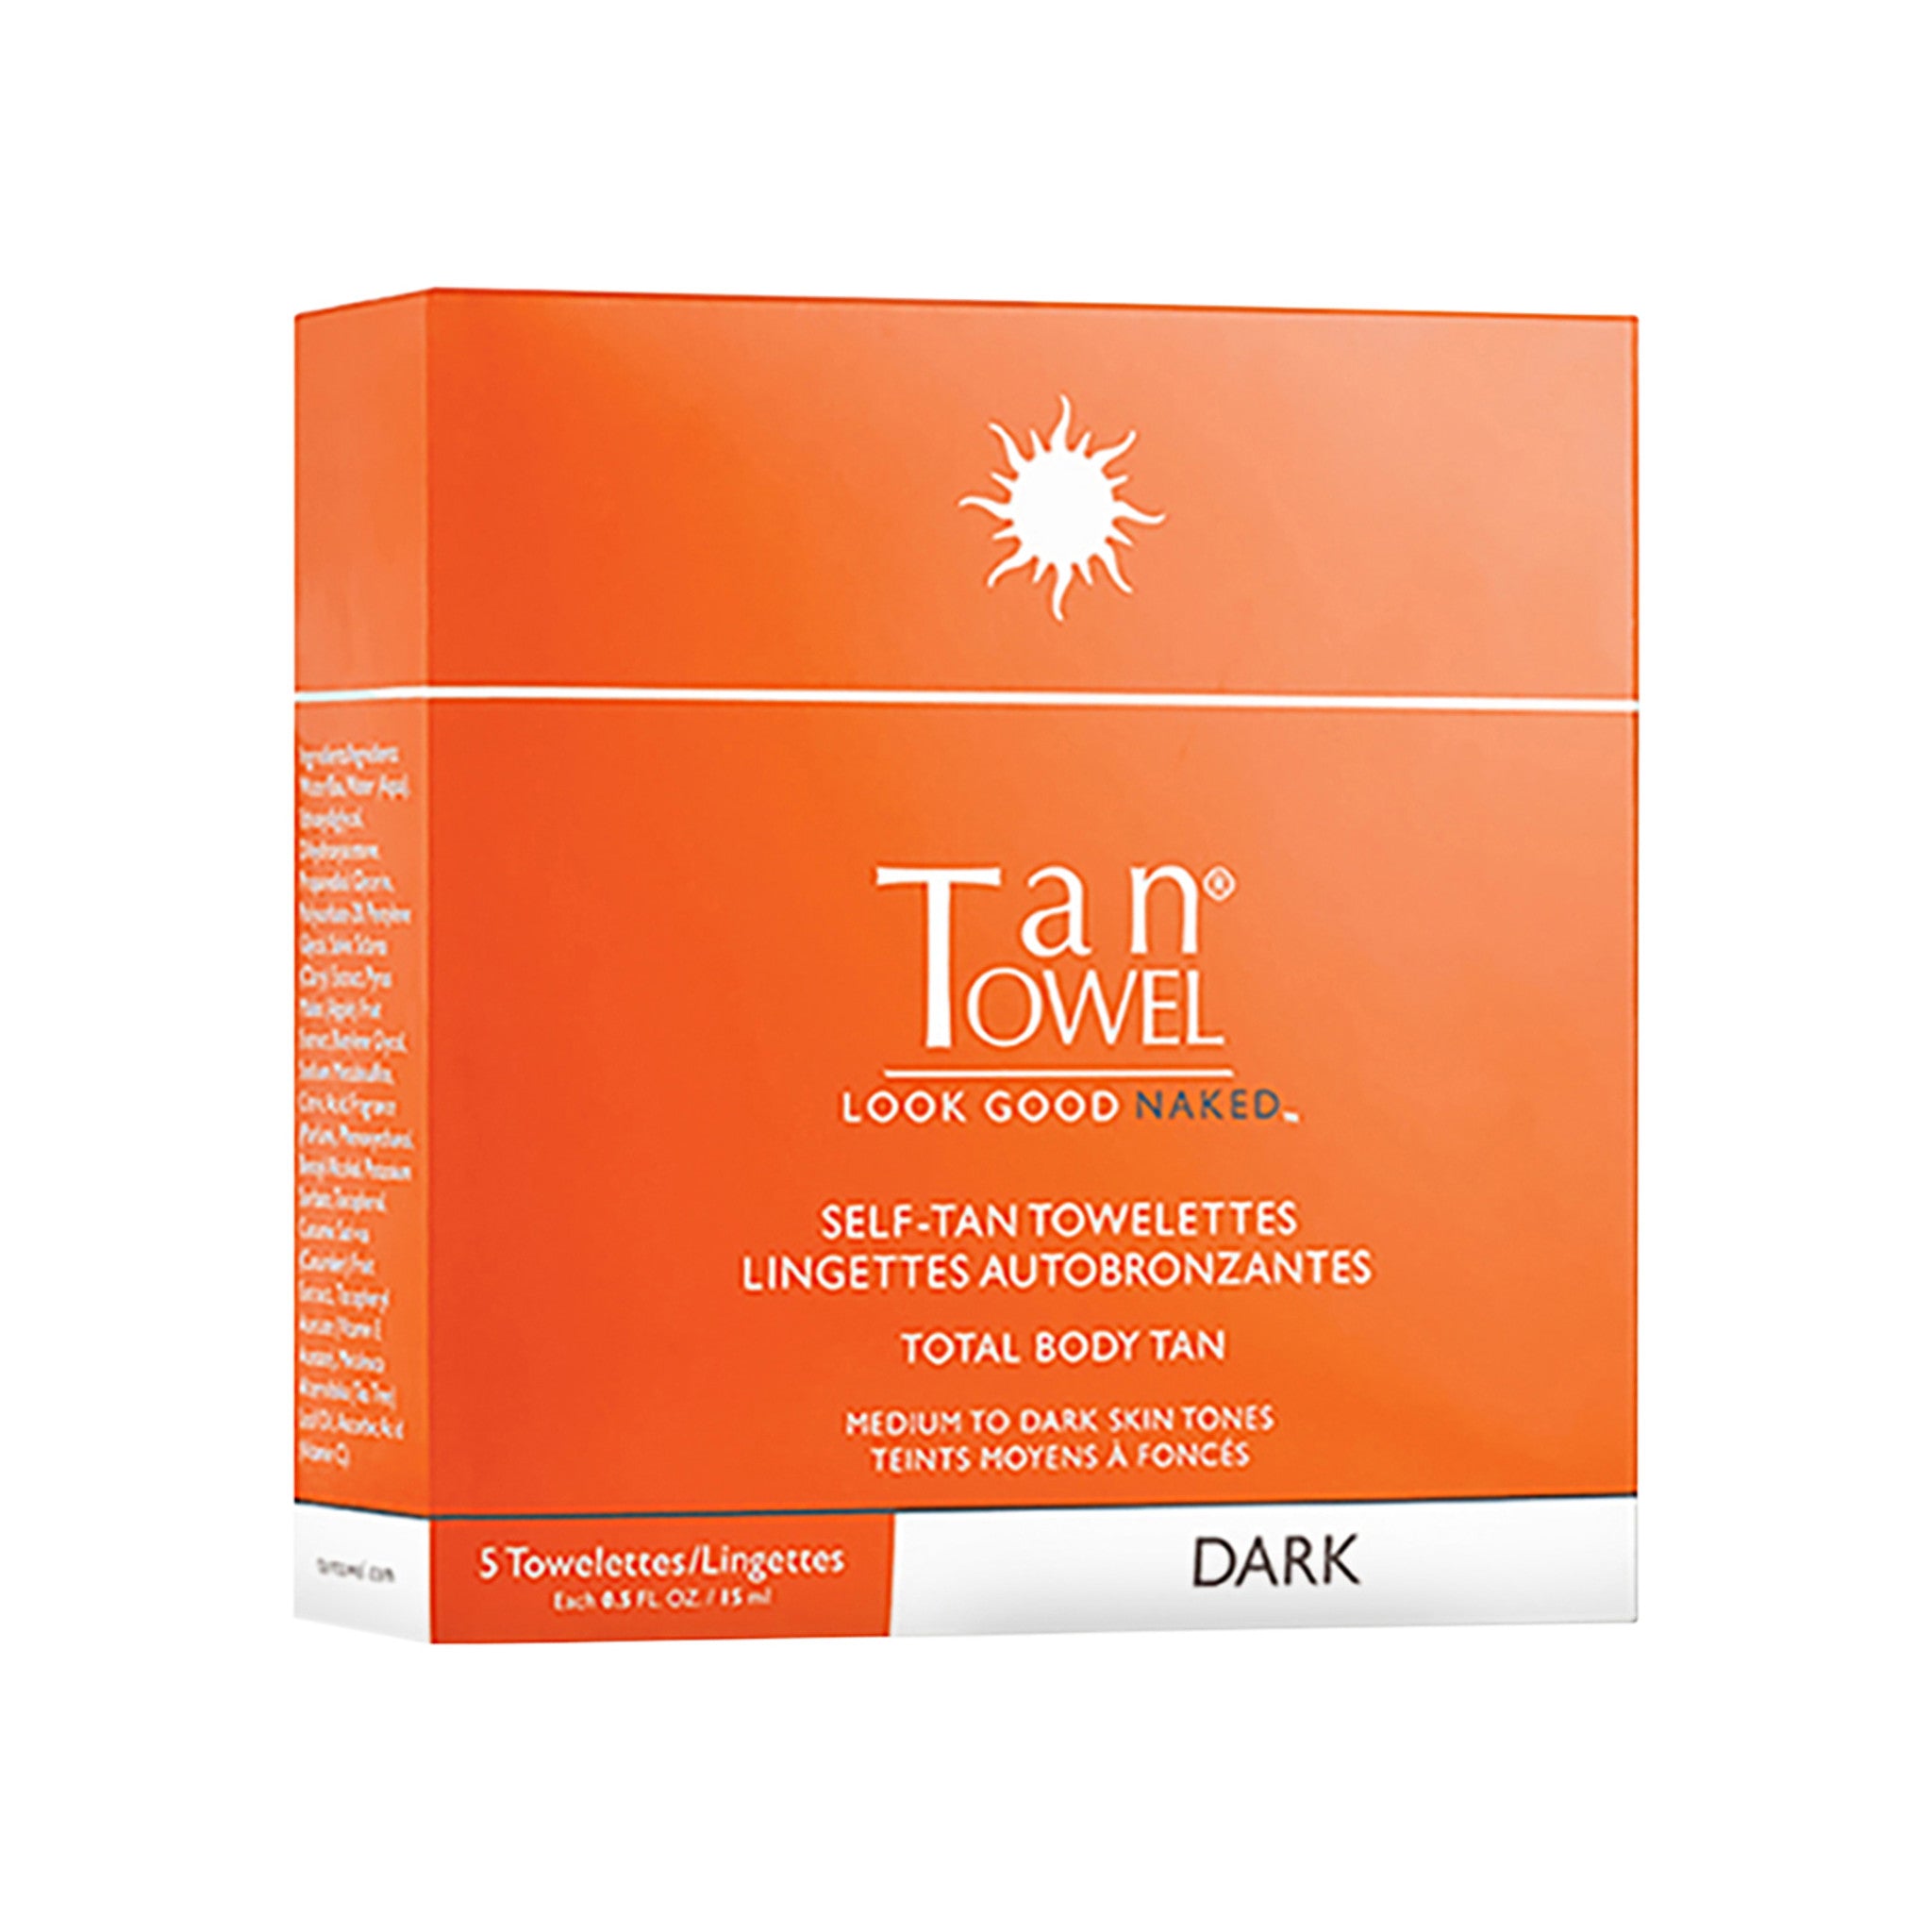 TanTowel Classic Total Body Self-Tan Towelette 5 Pack Color/Shade variant: Medium to Dark main image.